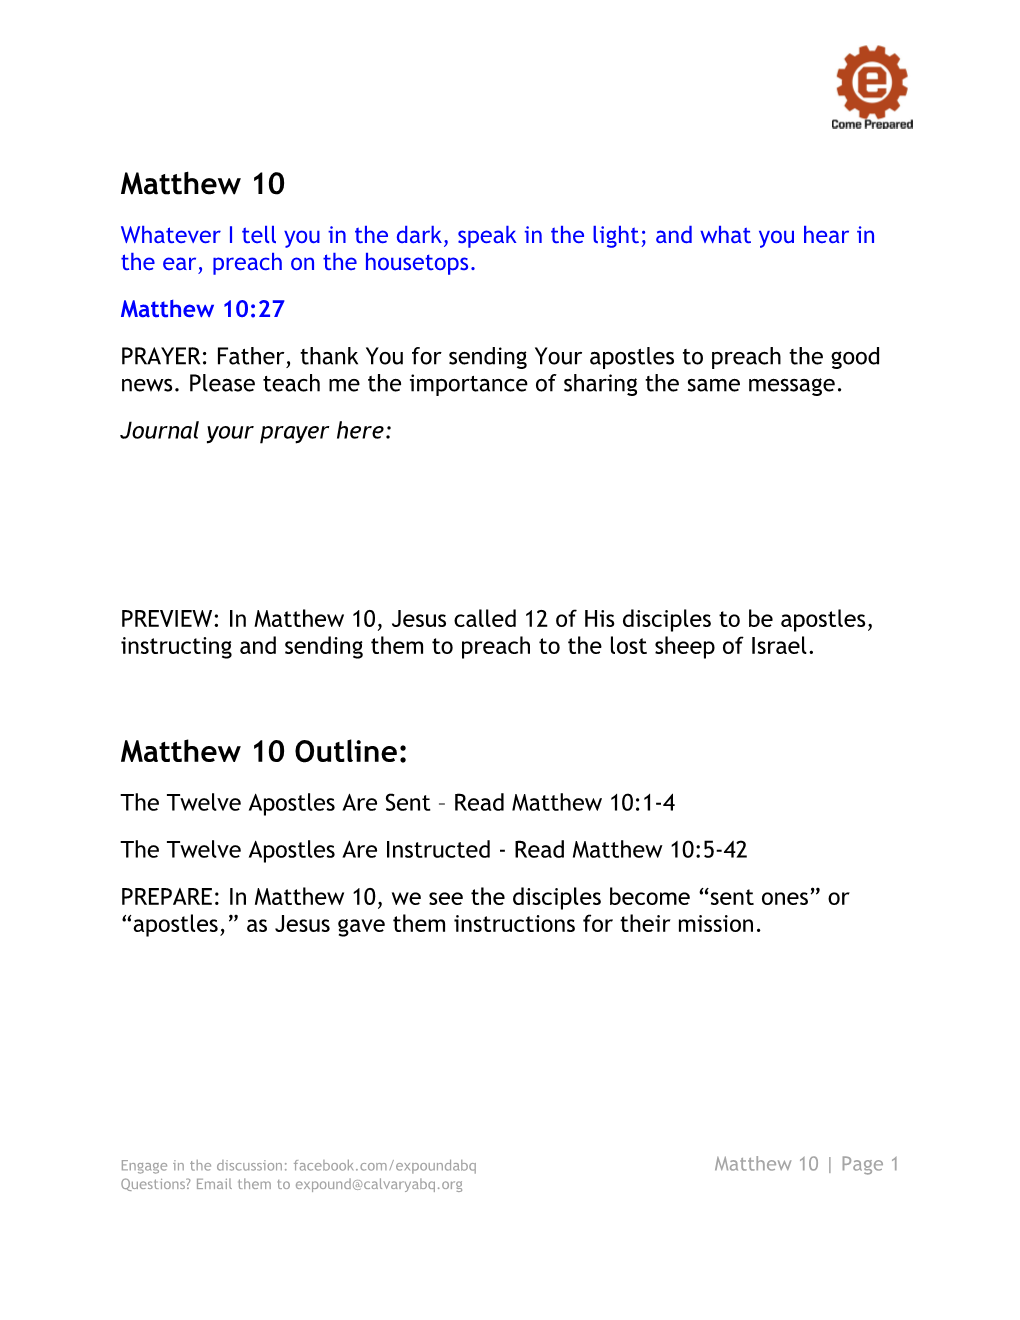 Matthew 10 Study Guide Handout